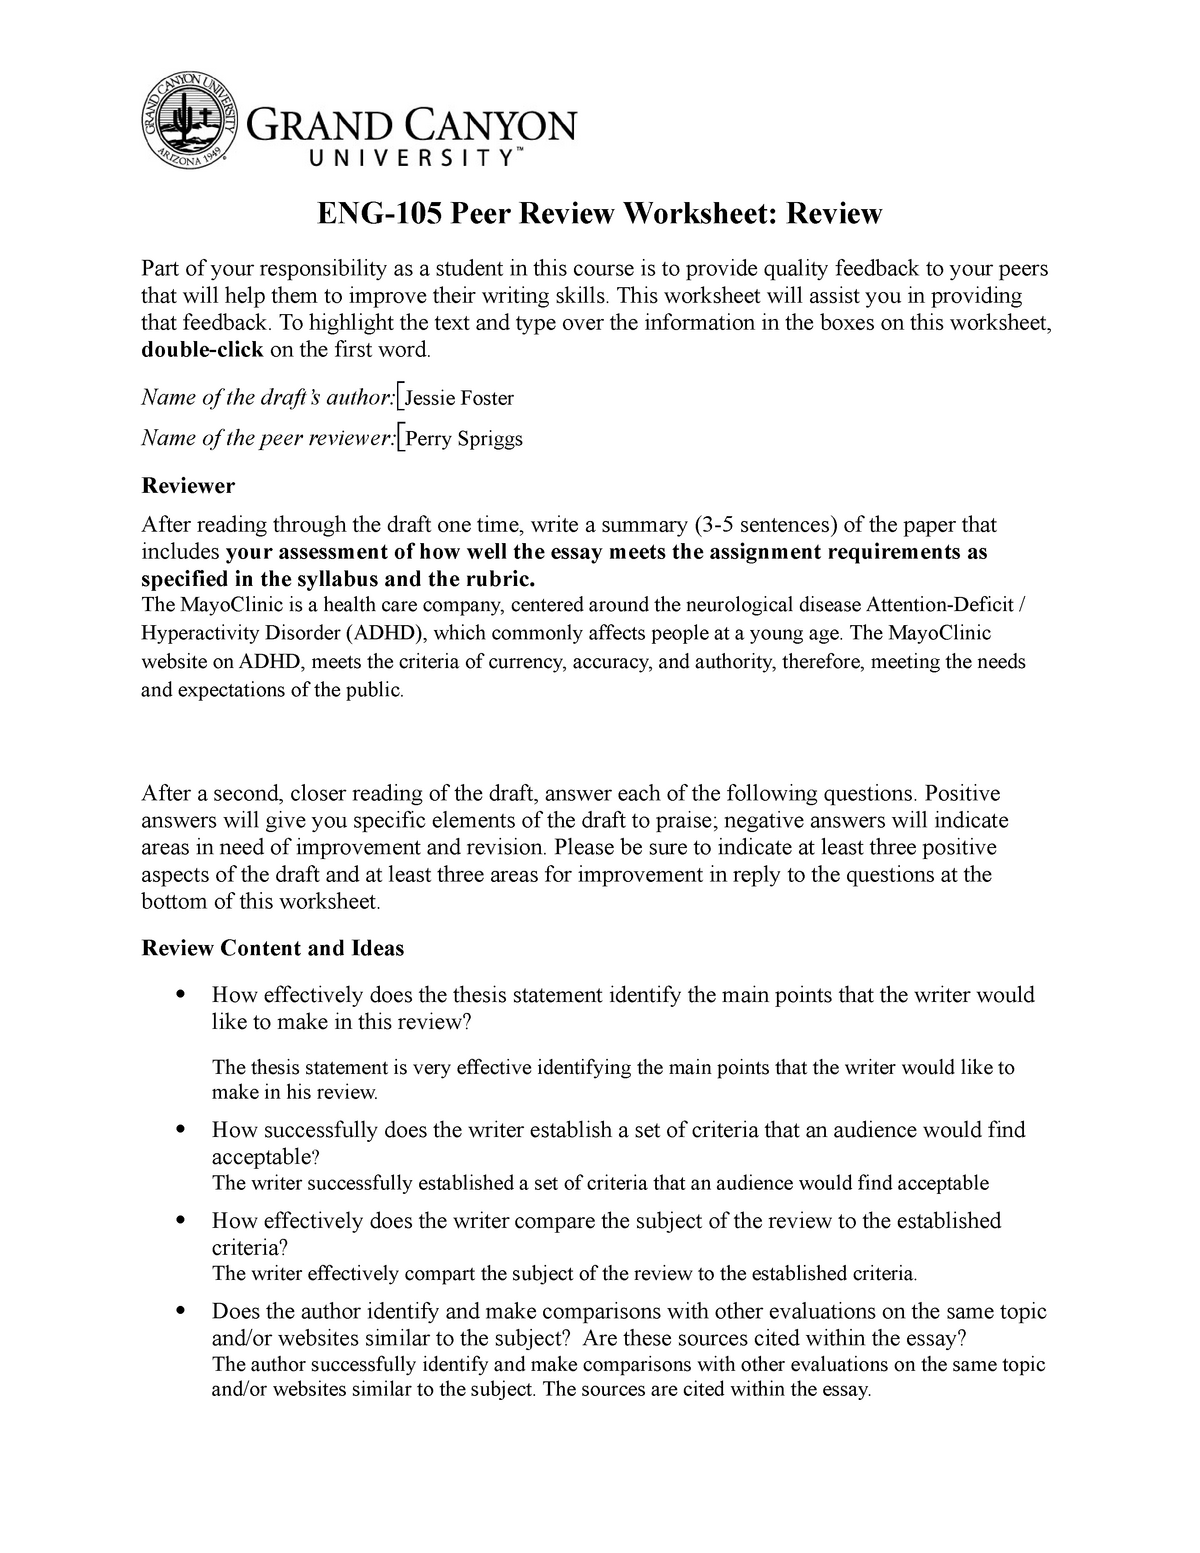 peer review worksheet college essay